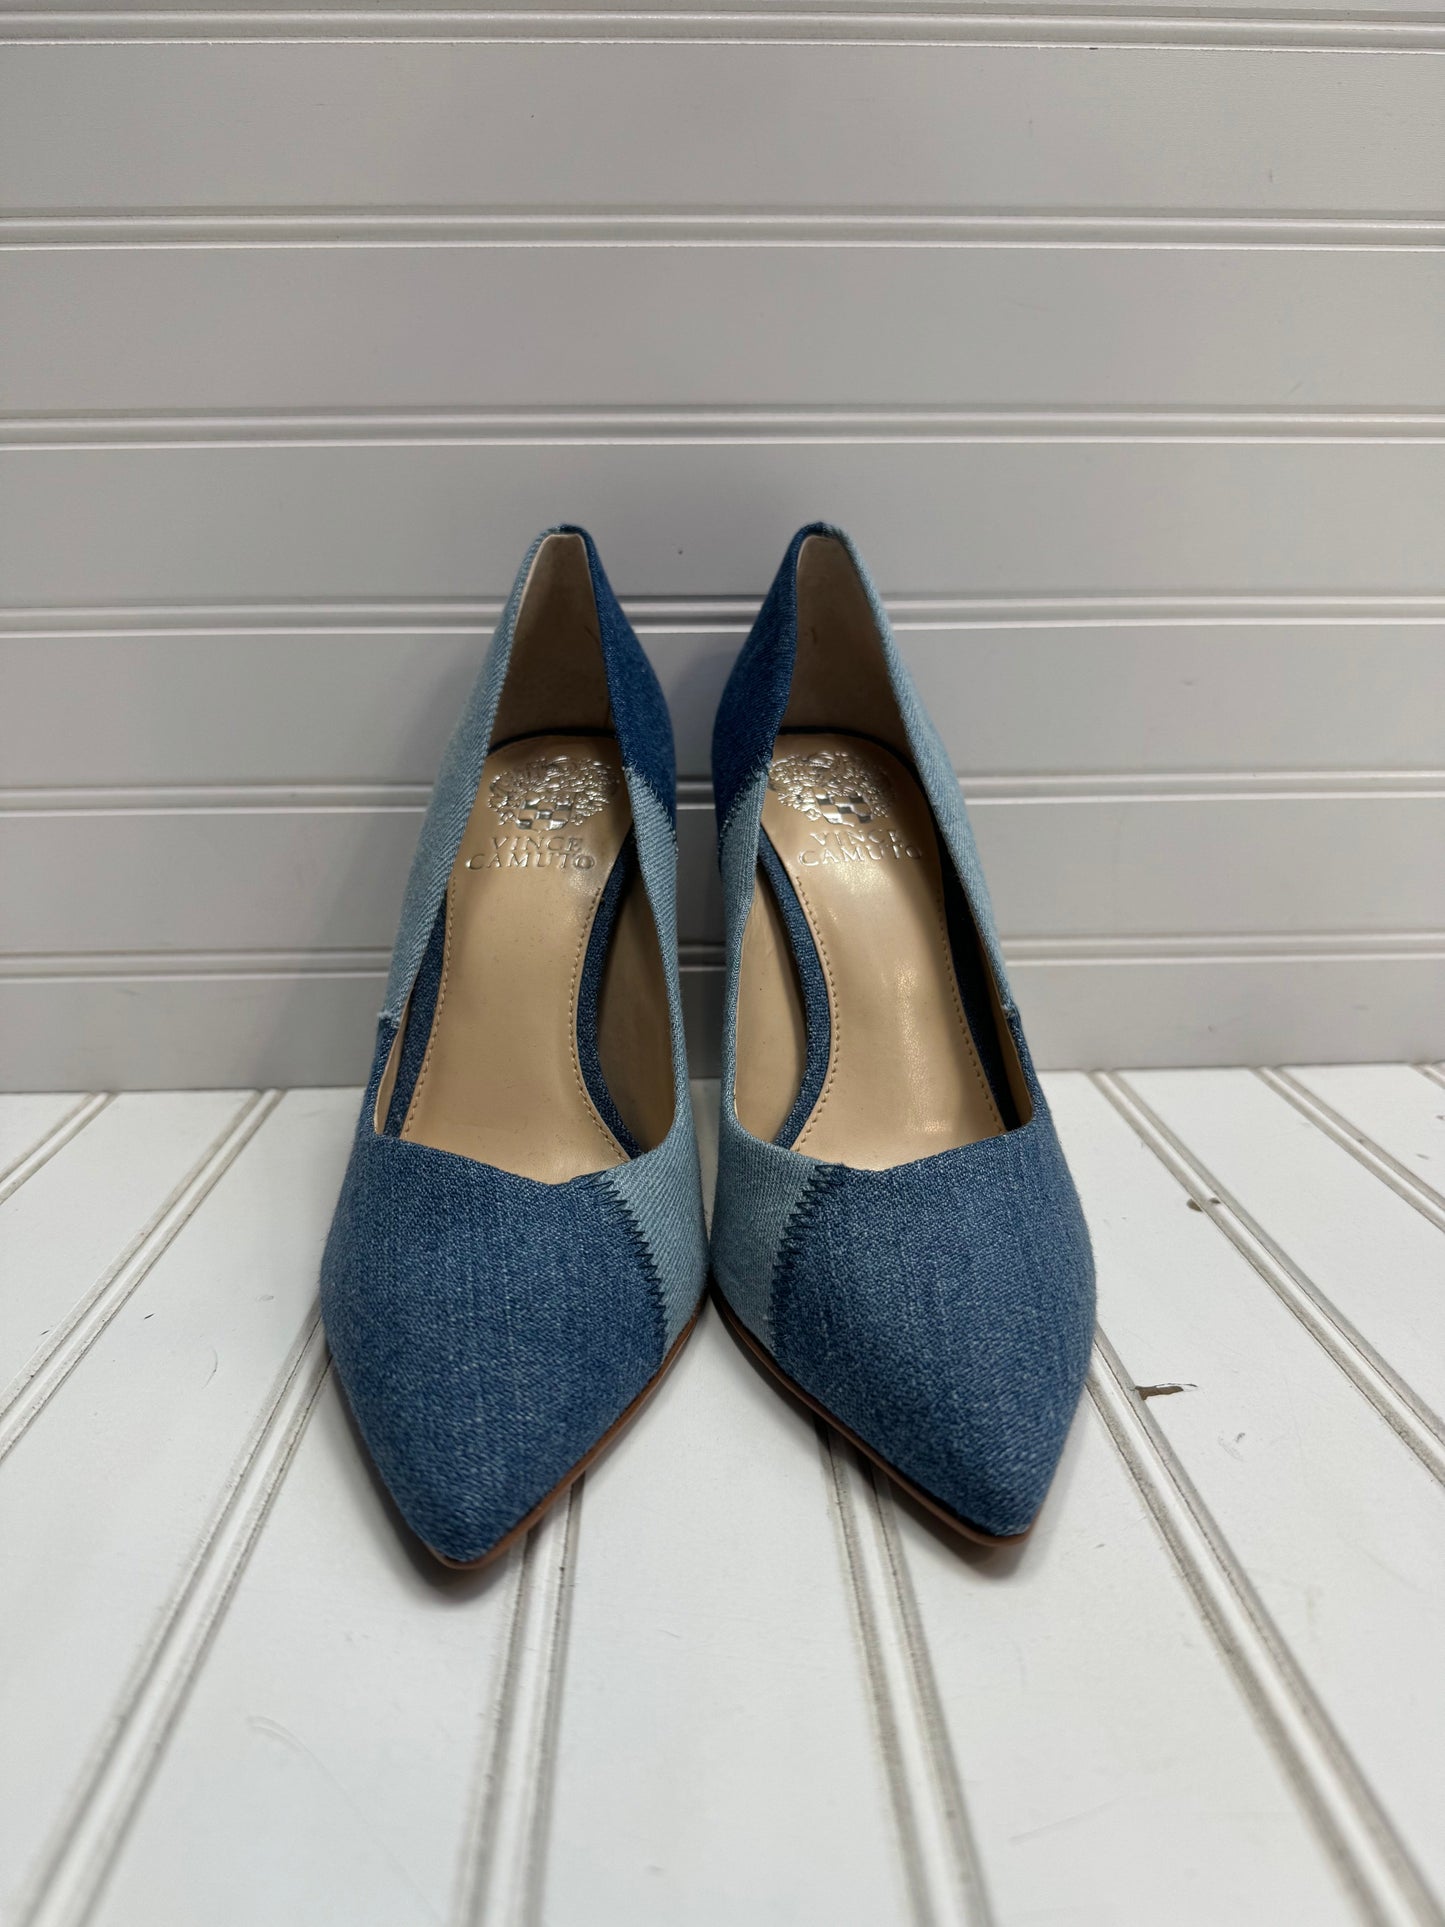 Blue Denim Shoes Heels Block Vince Camuto, Size 7